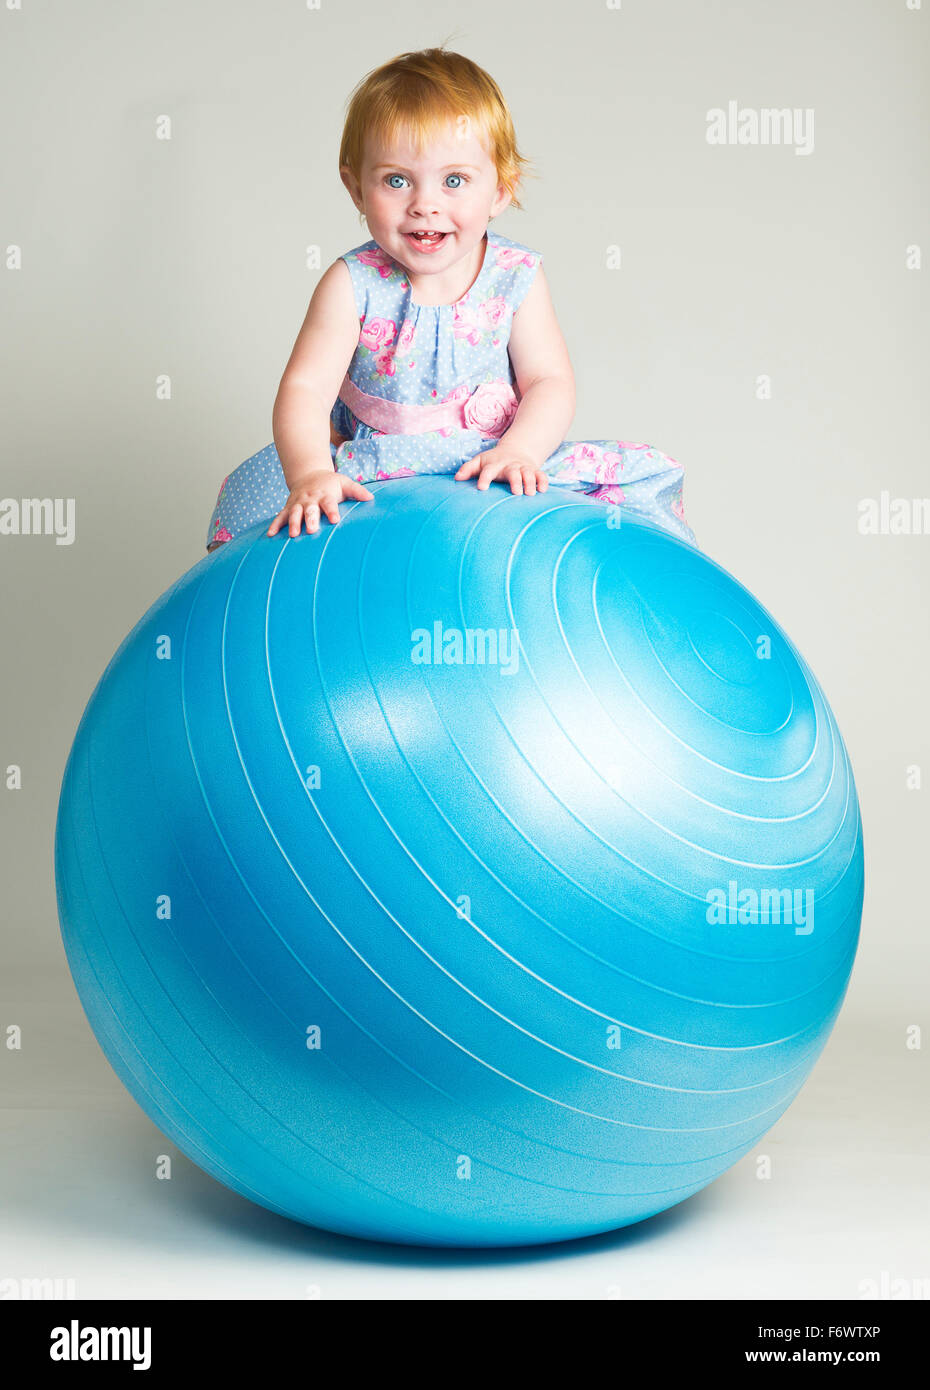 Une jolie petite fille d'un an assis sur un ballon d'équilibre Banque D'Images